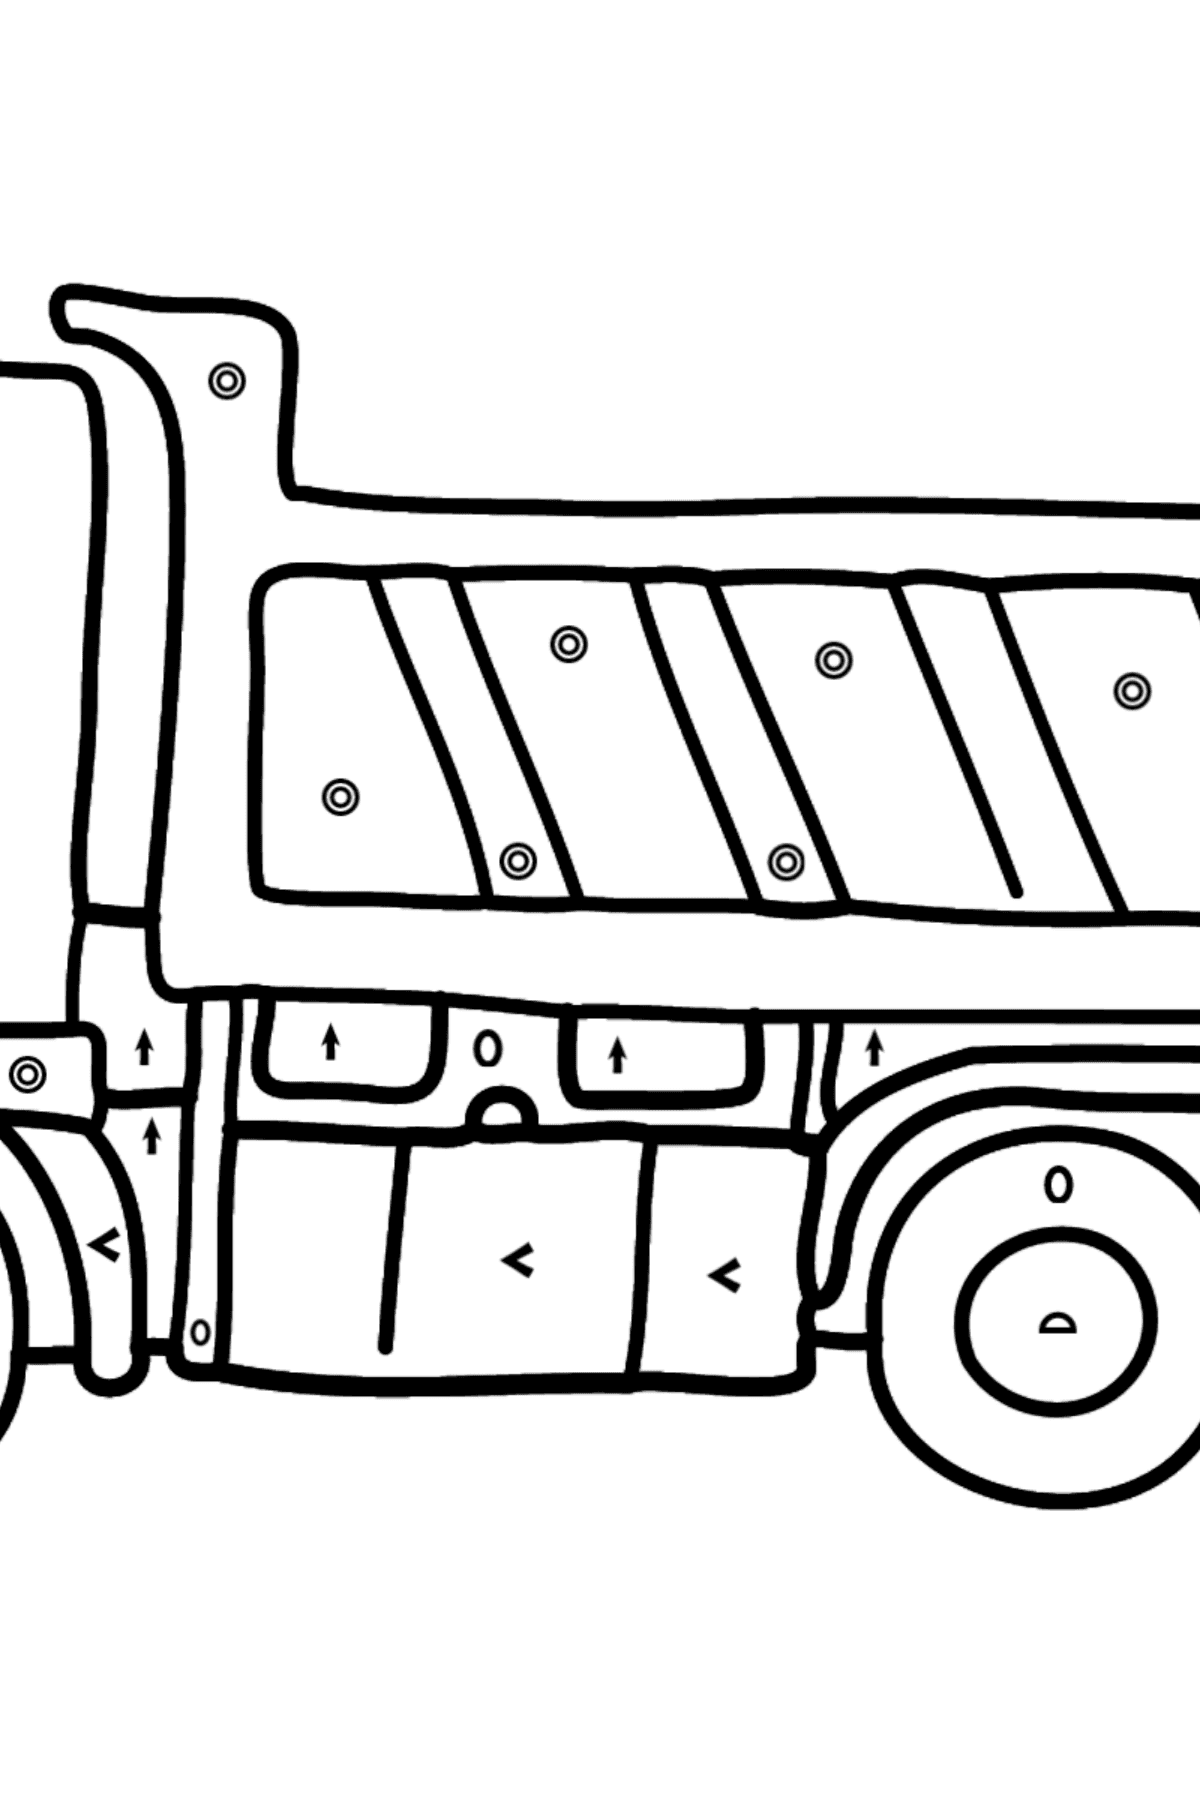 Coloriage - Un camion - Coloriage par Symboles pour les Enfants